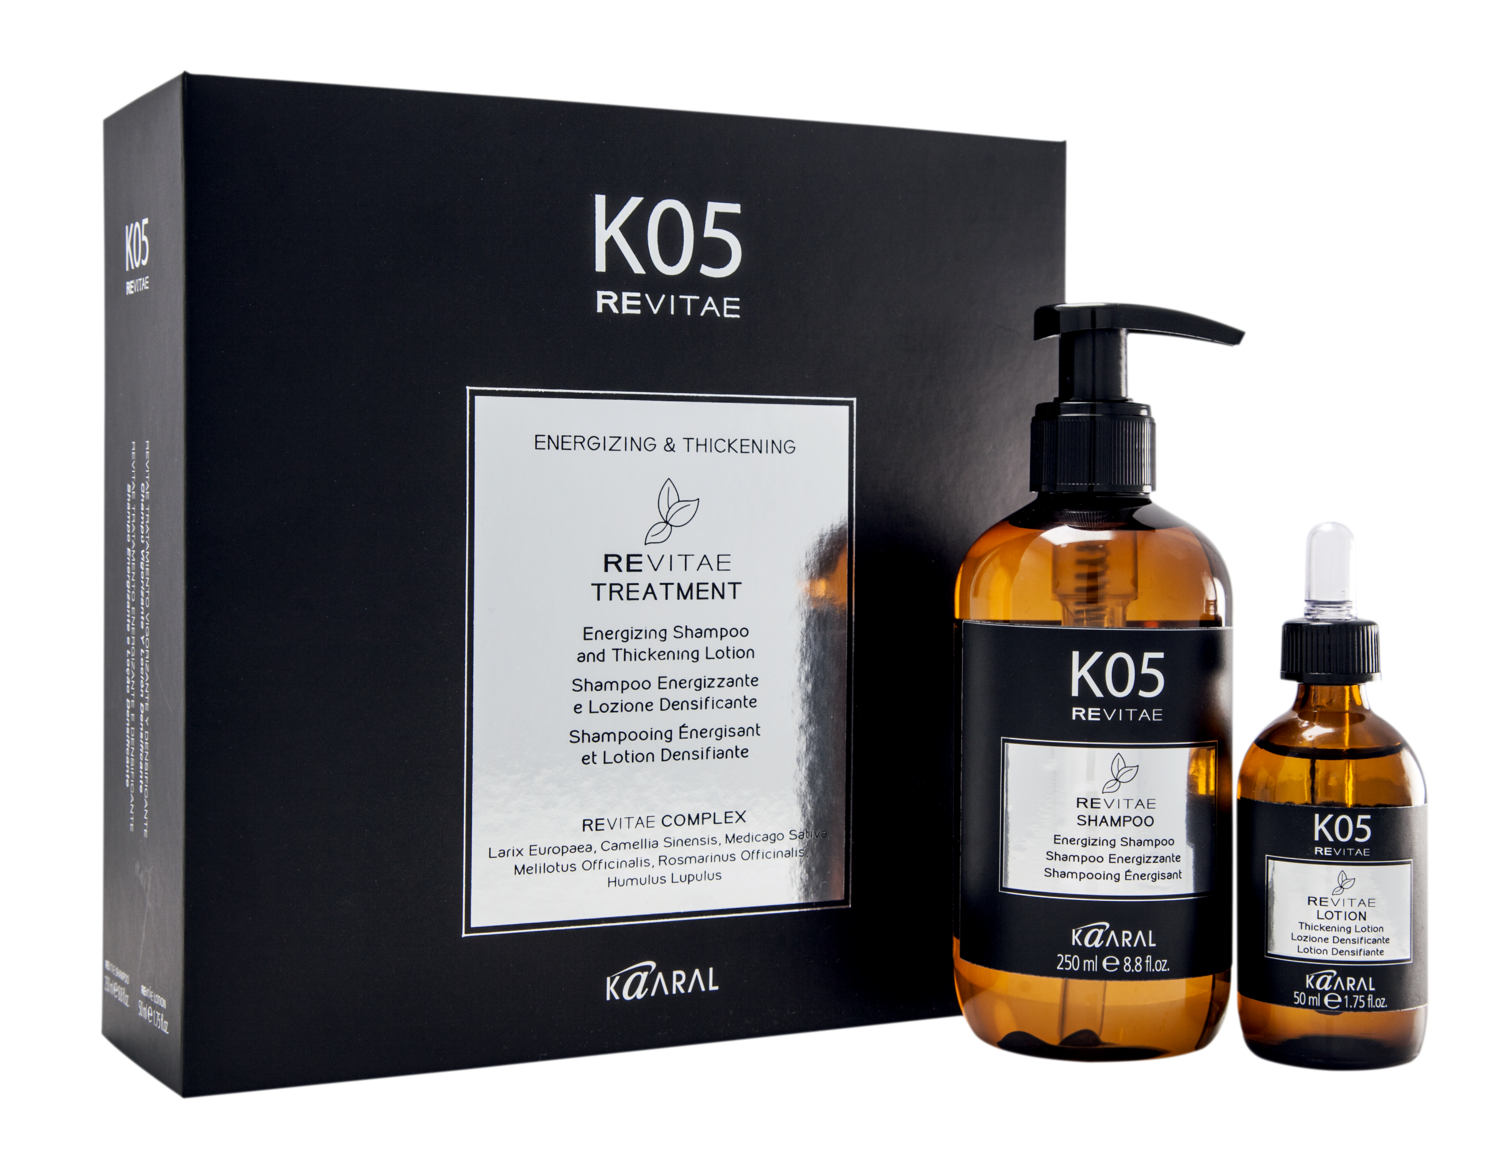 KAARAL K05 REVITAE Trattamento Energizzante e Densificante Kit Shampoo 250ML + Lozione 50ML